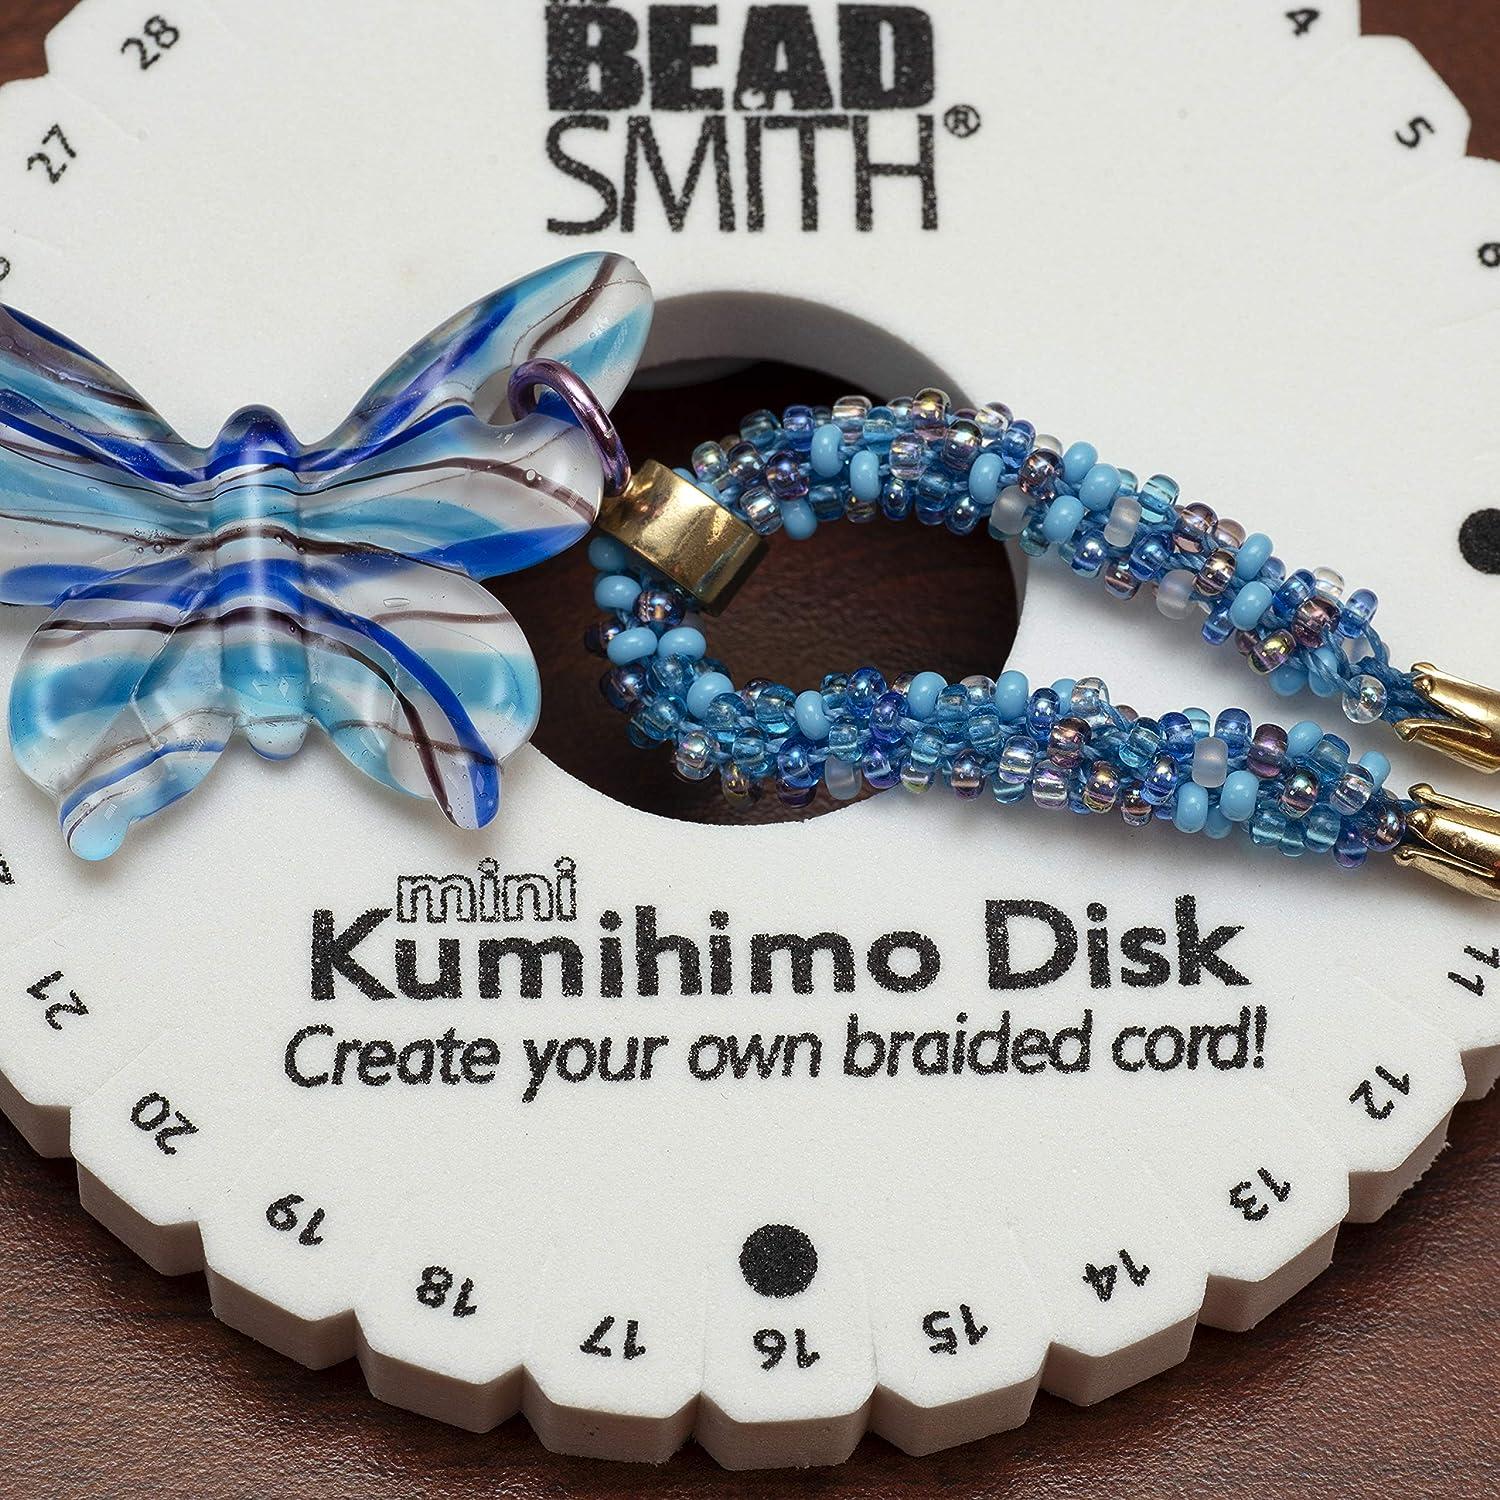 Product Review: Kumihimo Handle - Kumihimo Disk & Plate